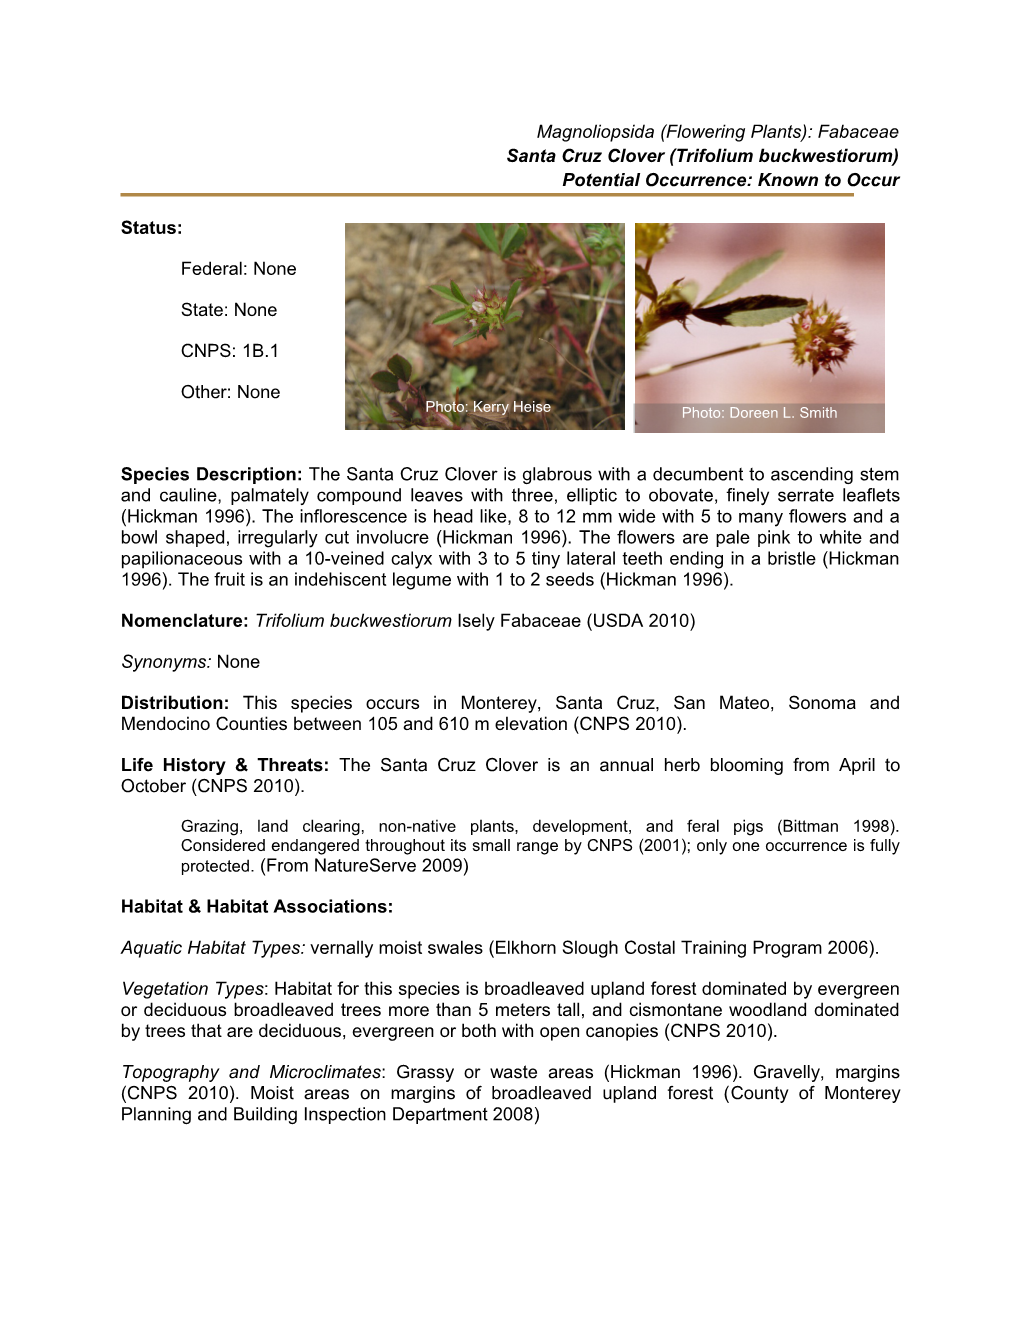 Santa Cruz Clover (Trifolium Buckwestiorum)